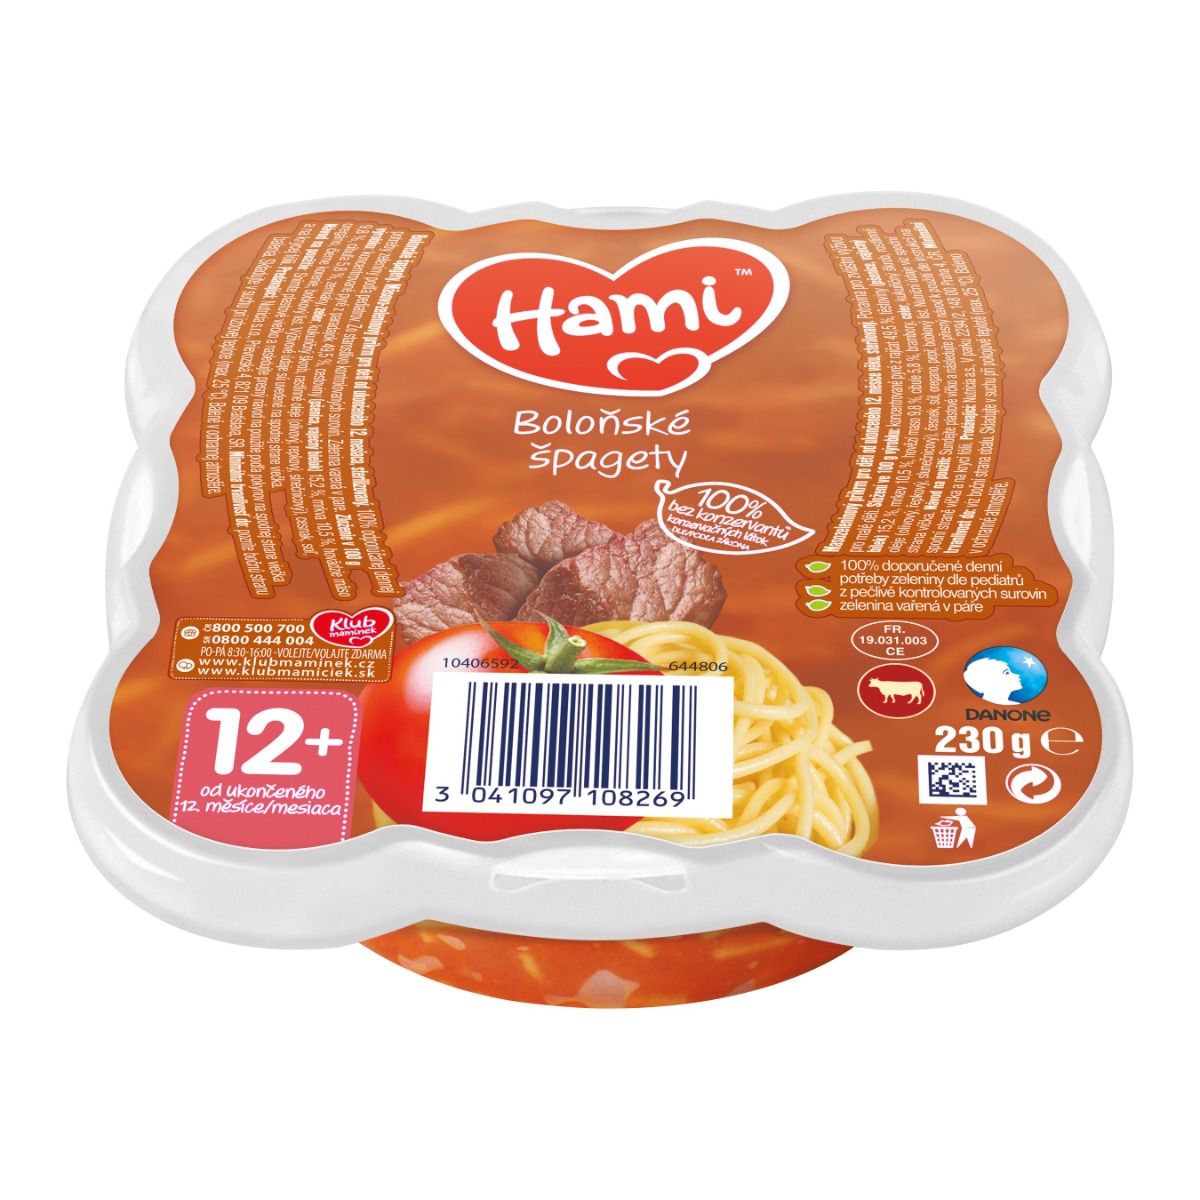 Hami Boloňské špagety 230 g Hami